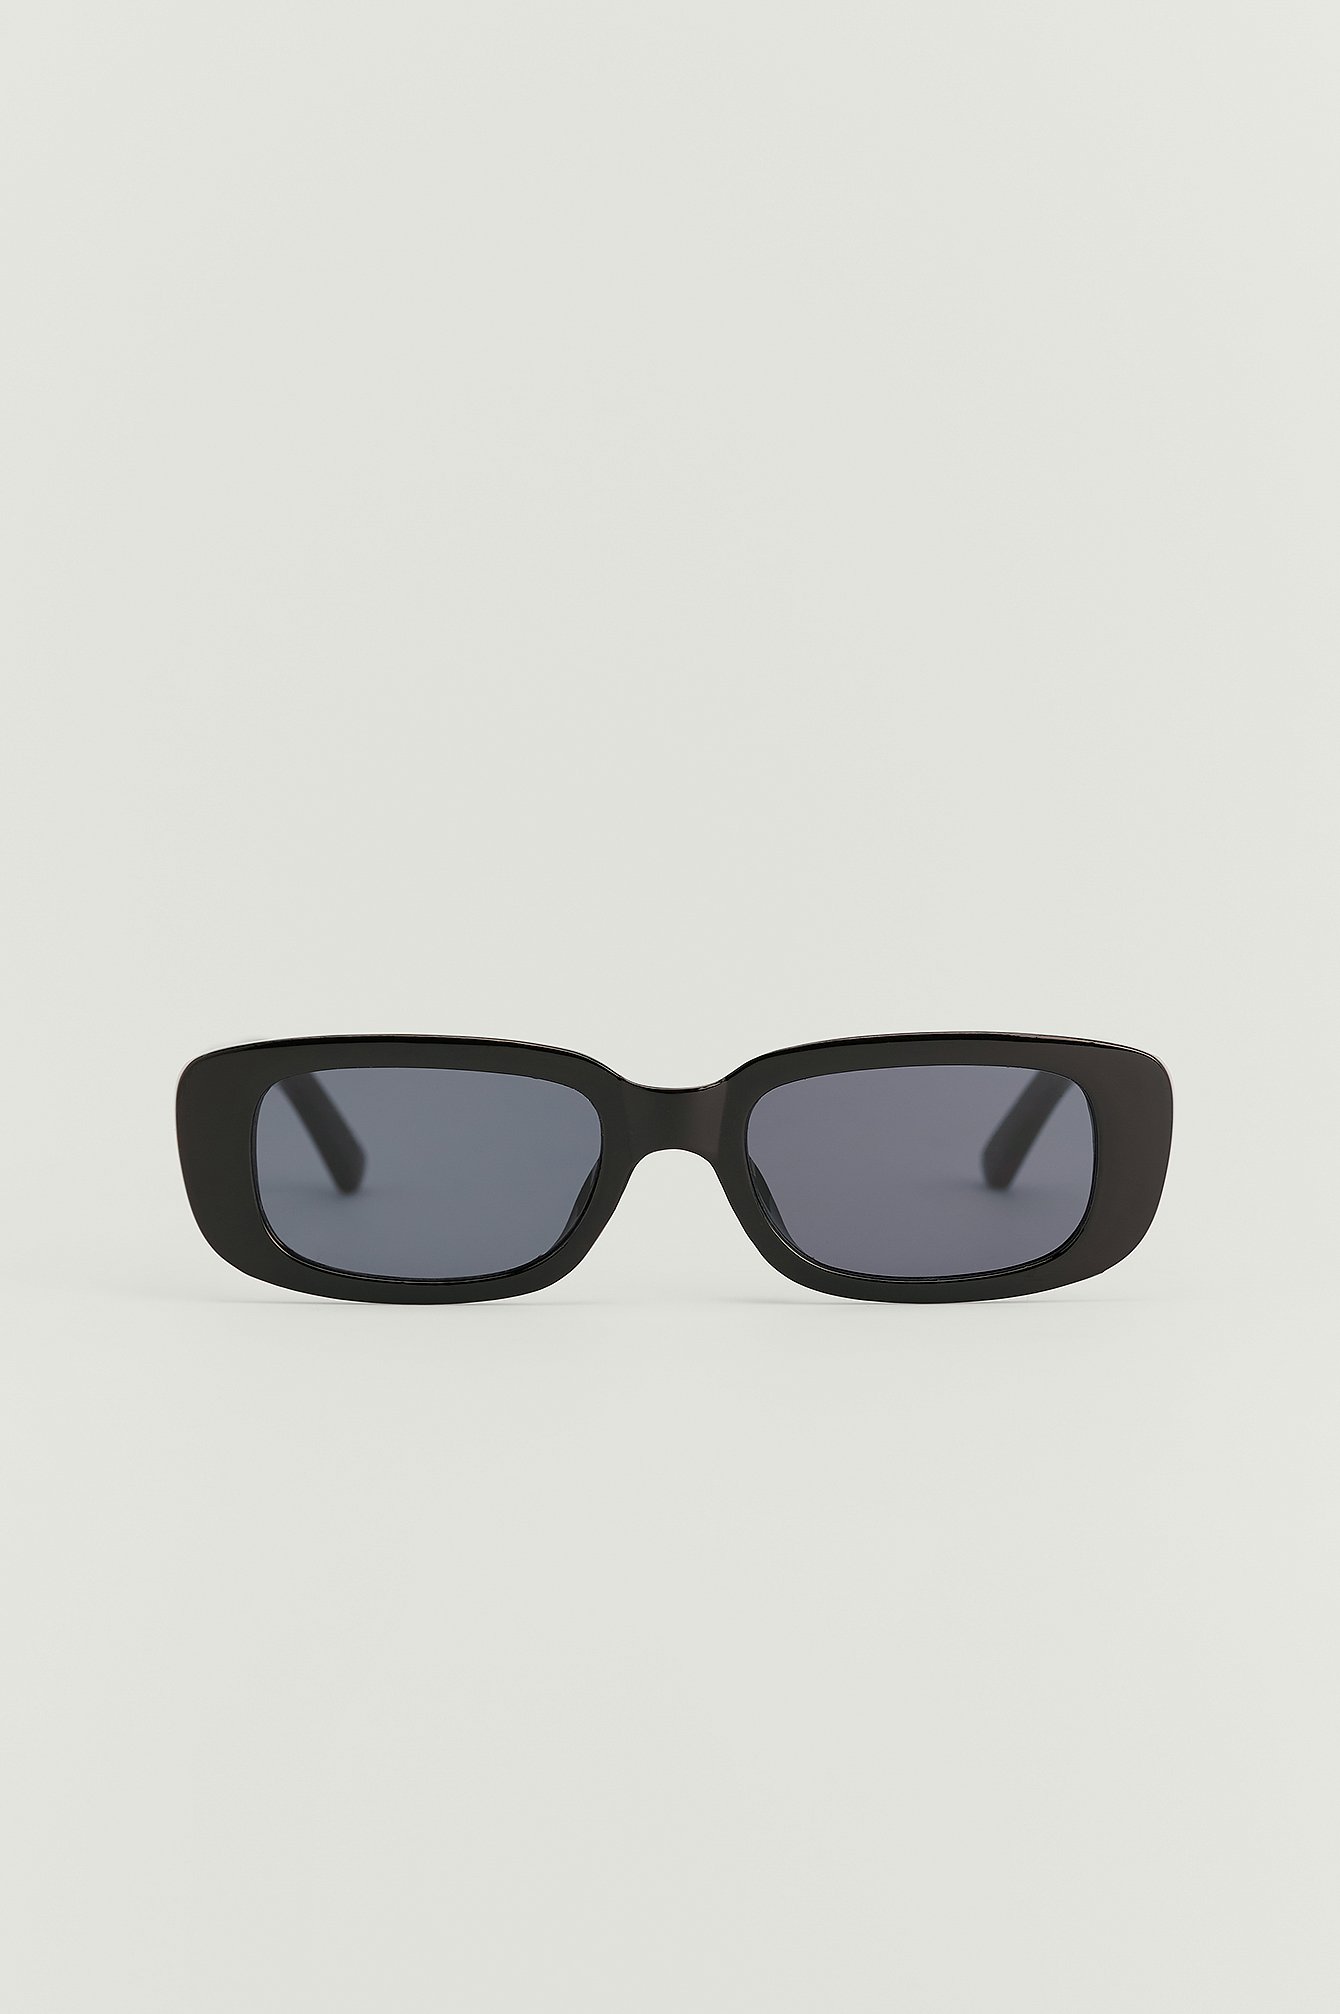 Black Szerokie Okulary Przeciwsłoneczne W Stylu Retro